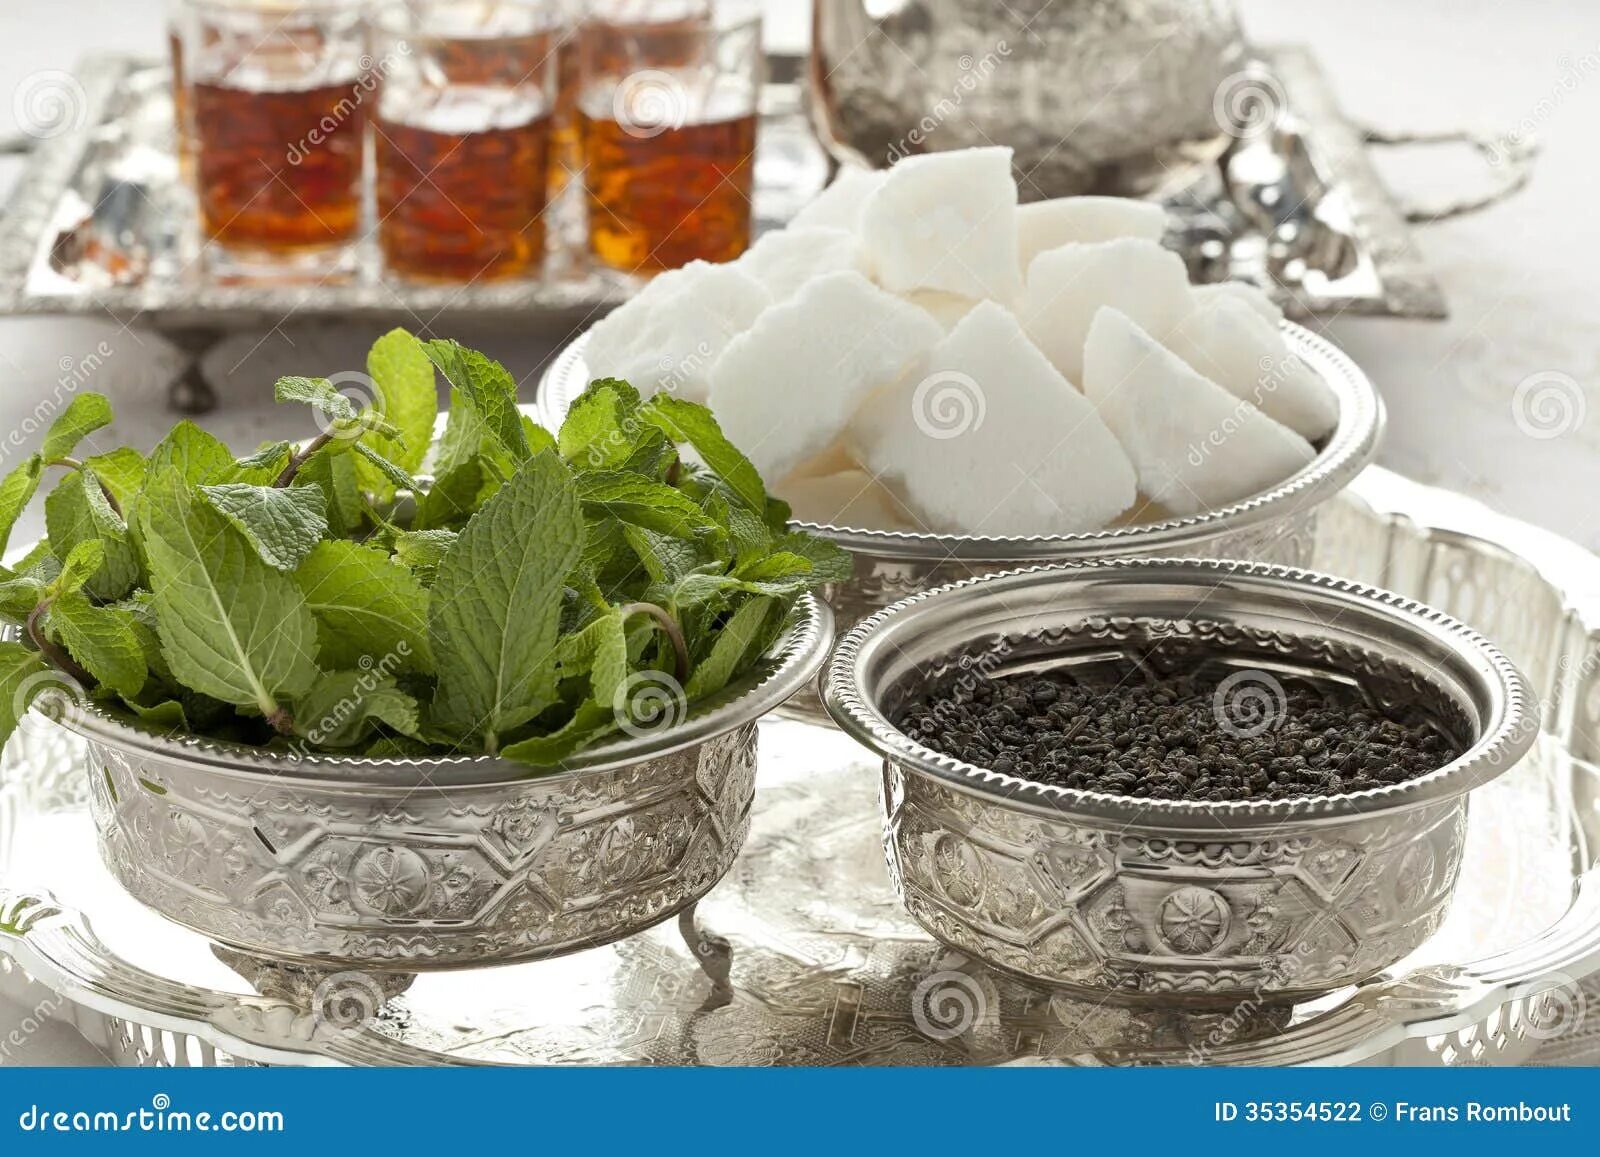 Чай с сахаром в пост пить можно. Чай с сахаром. Марокканский чай. Чайный сахар. Зеленый чай с мятой и сахаром Марокко.